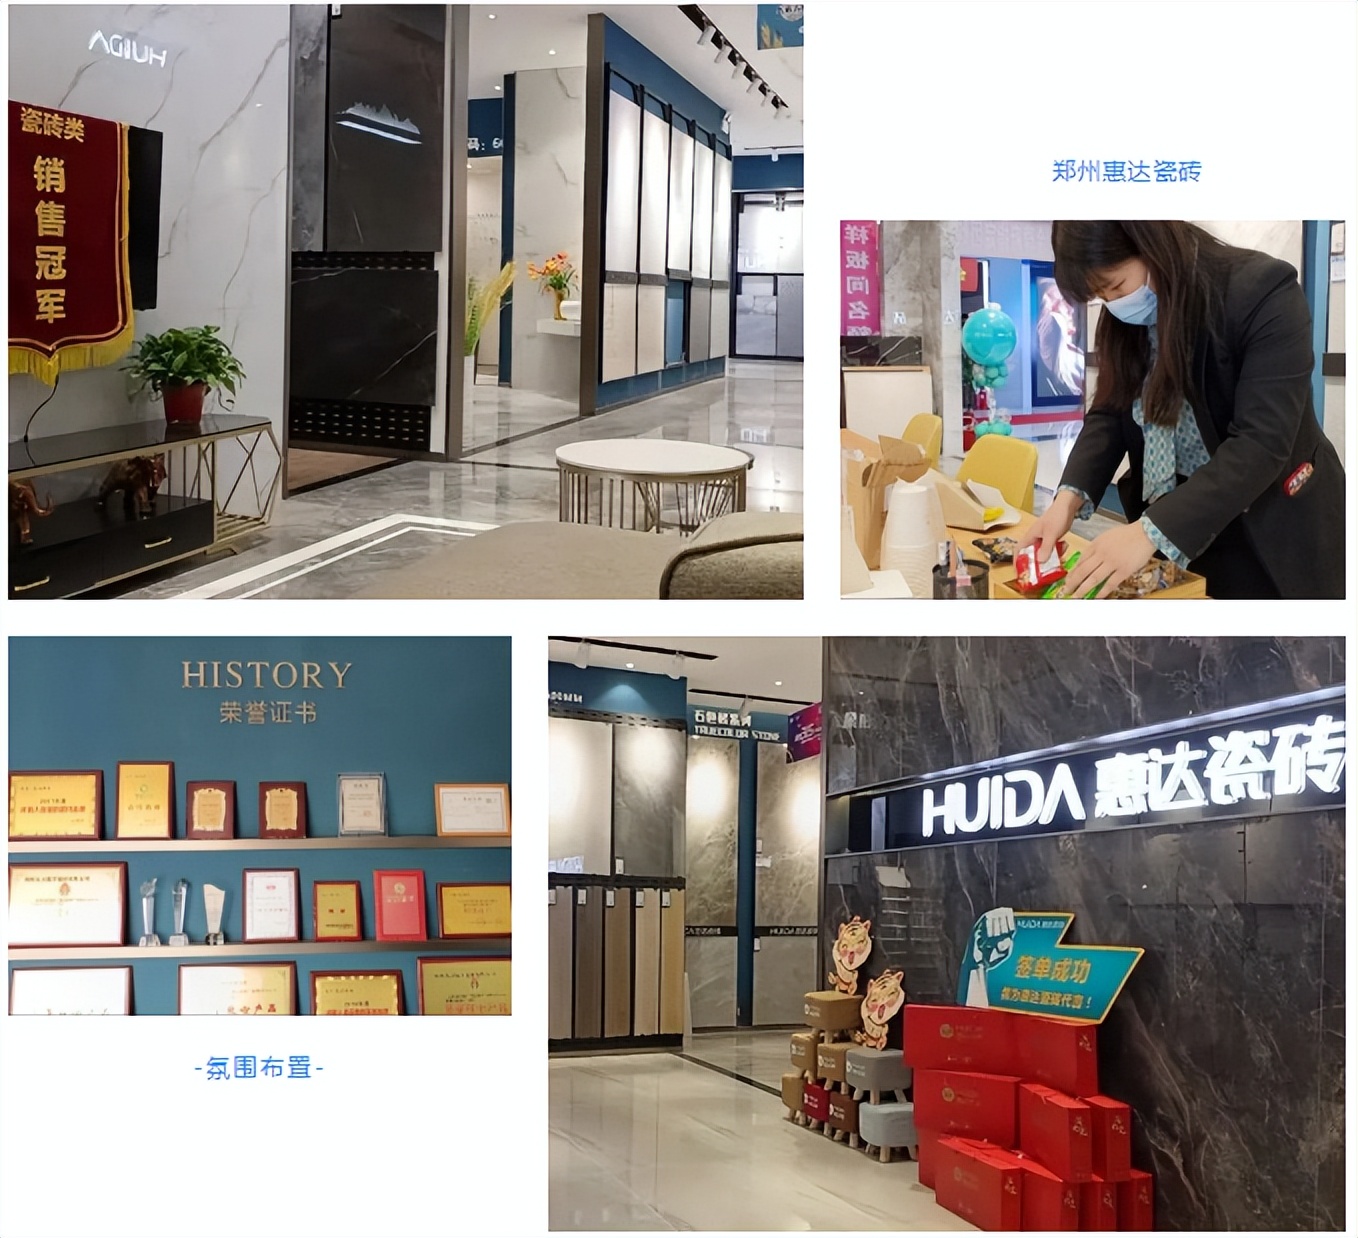 郑州居然惠达瓷砖“1515”样板市场打造显成效，门店业绩强势增长